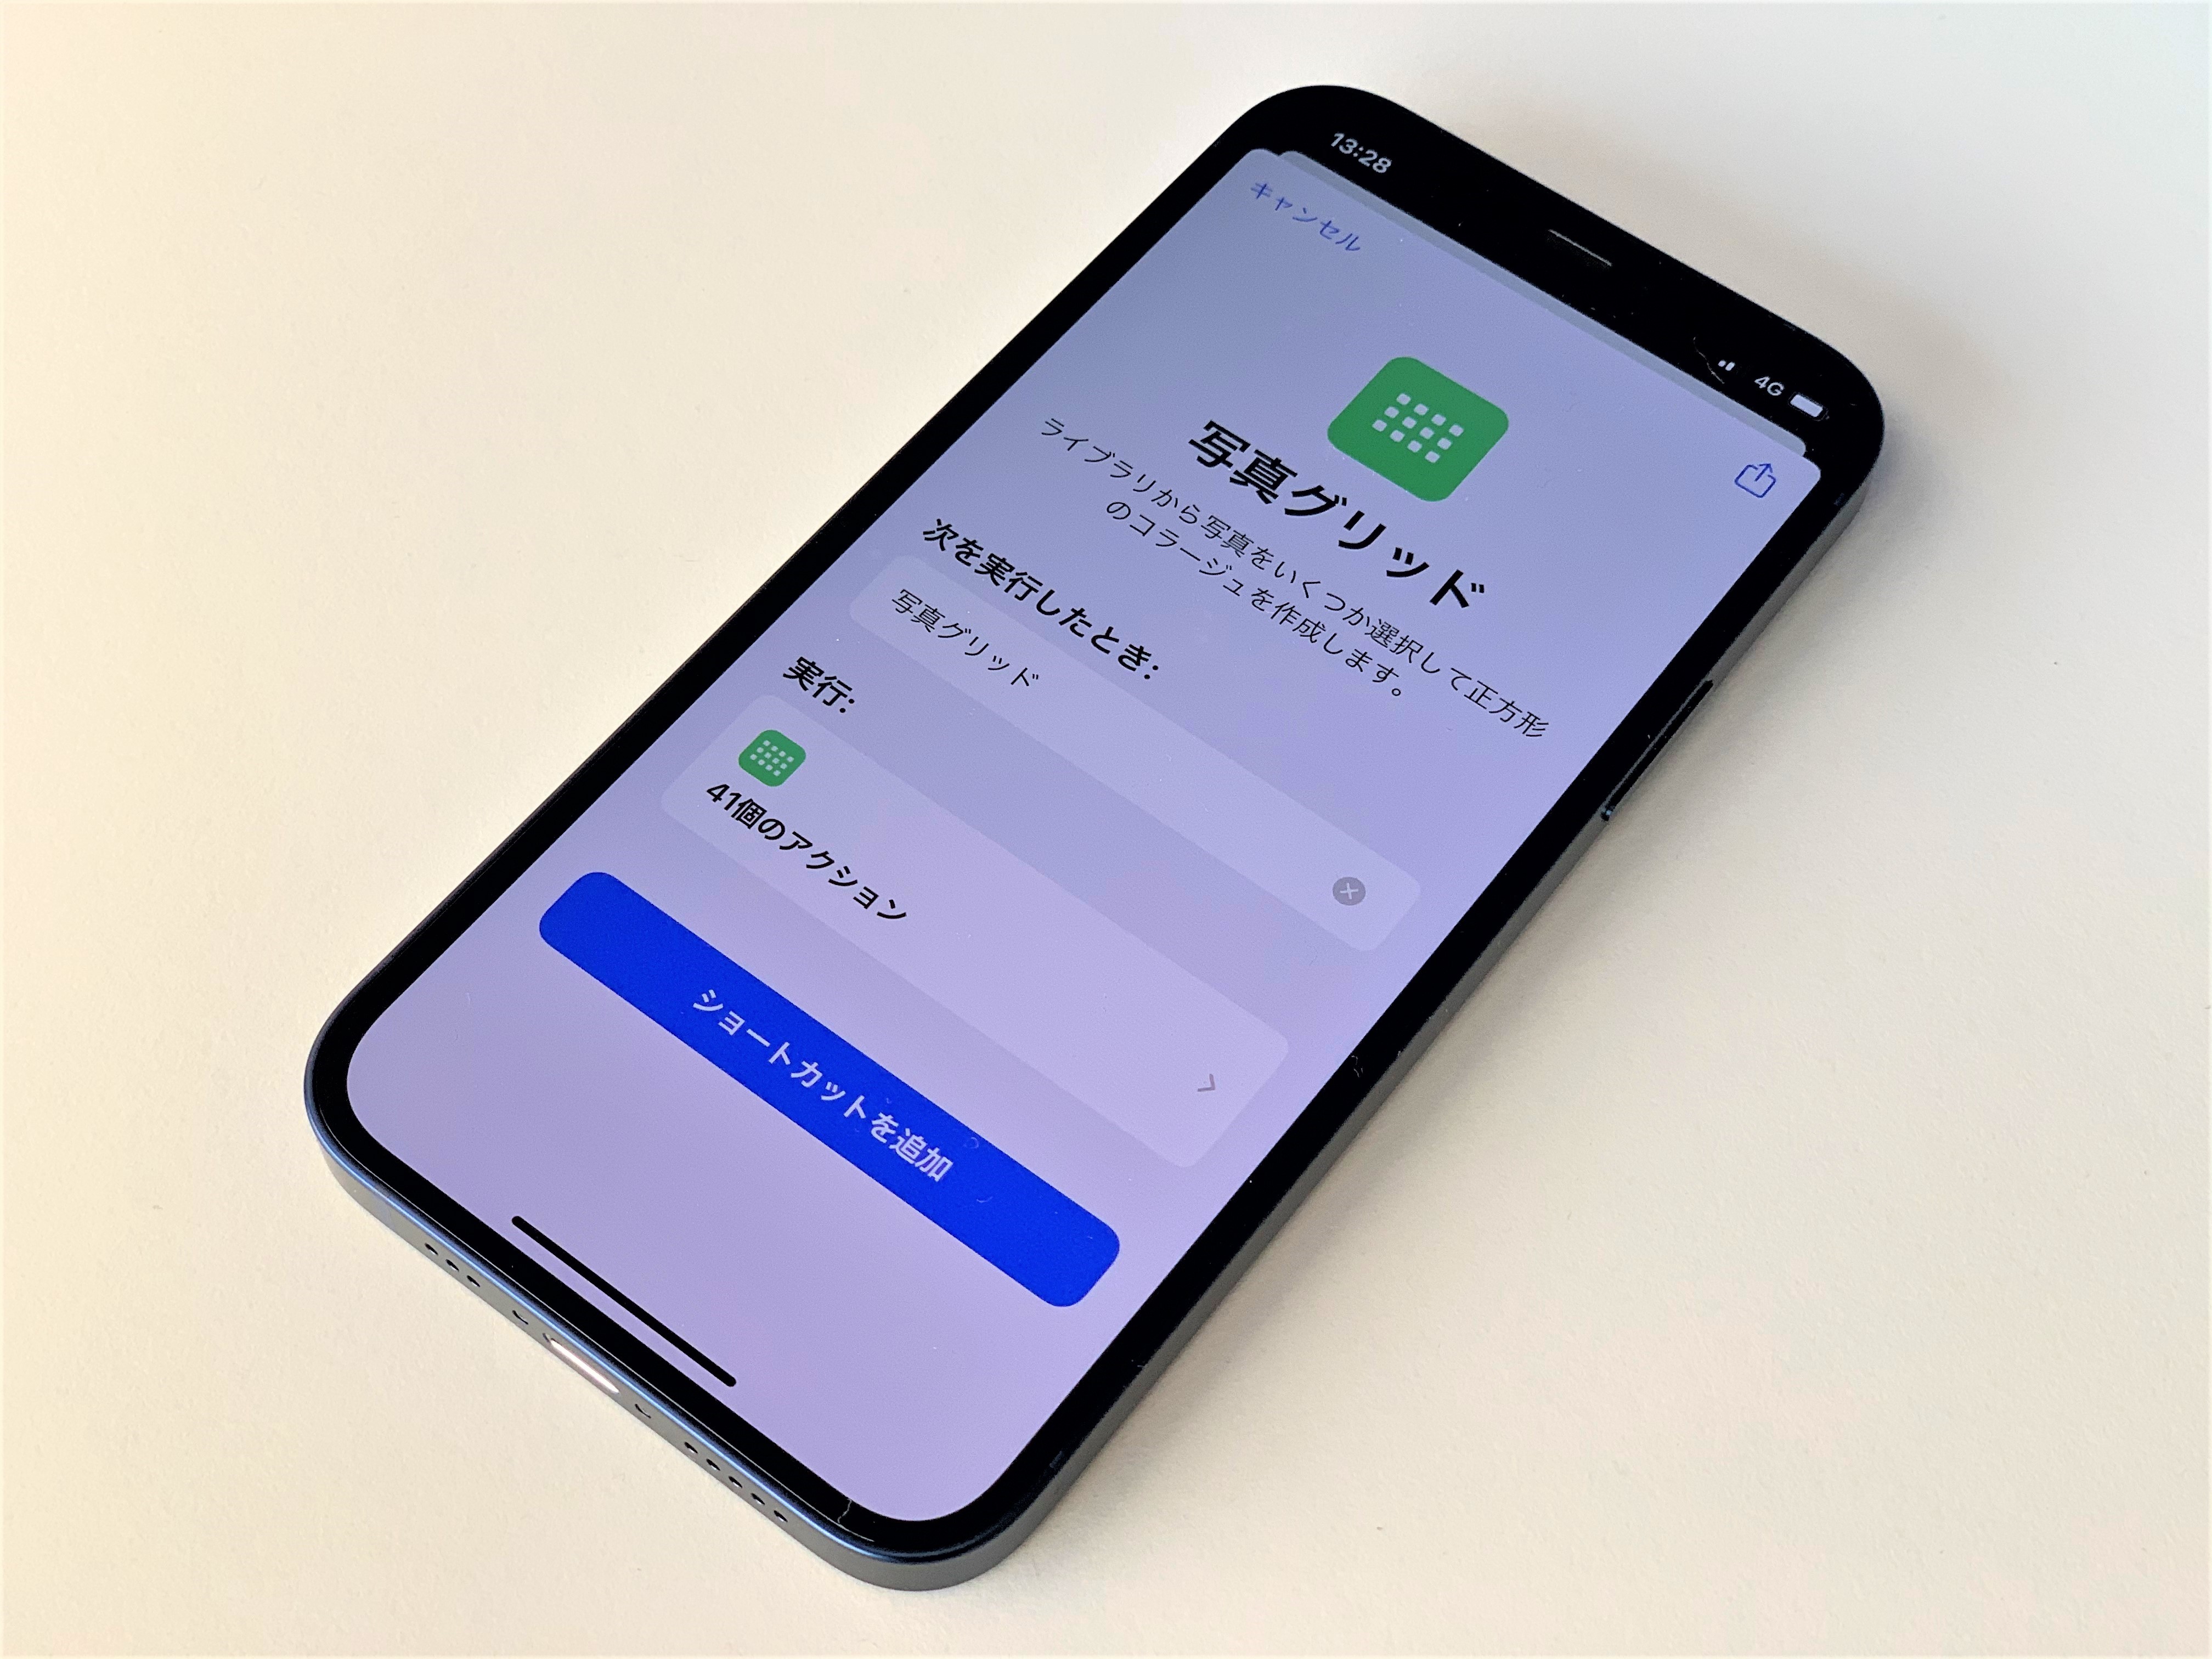 新規アプリの購入不要 複数の写真をまとめて一枚にするカンタン裏技 Iphone Tips Engadget 日本版